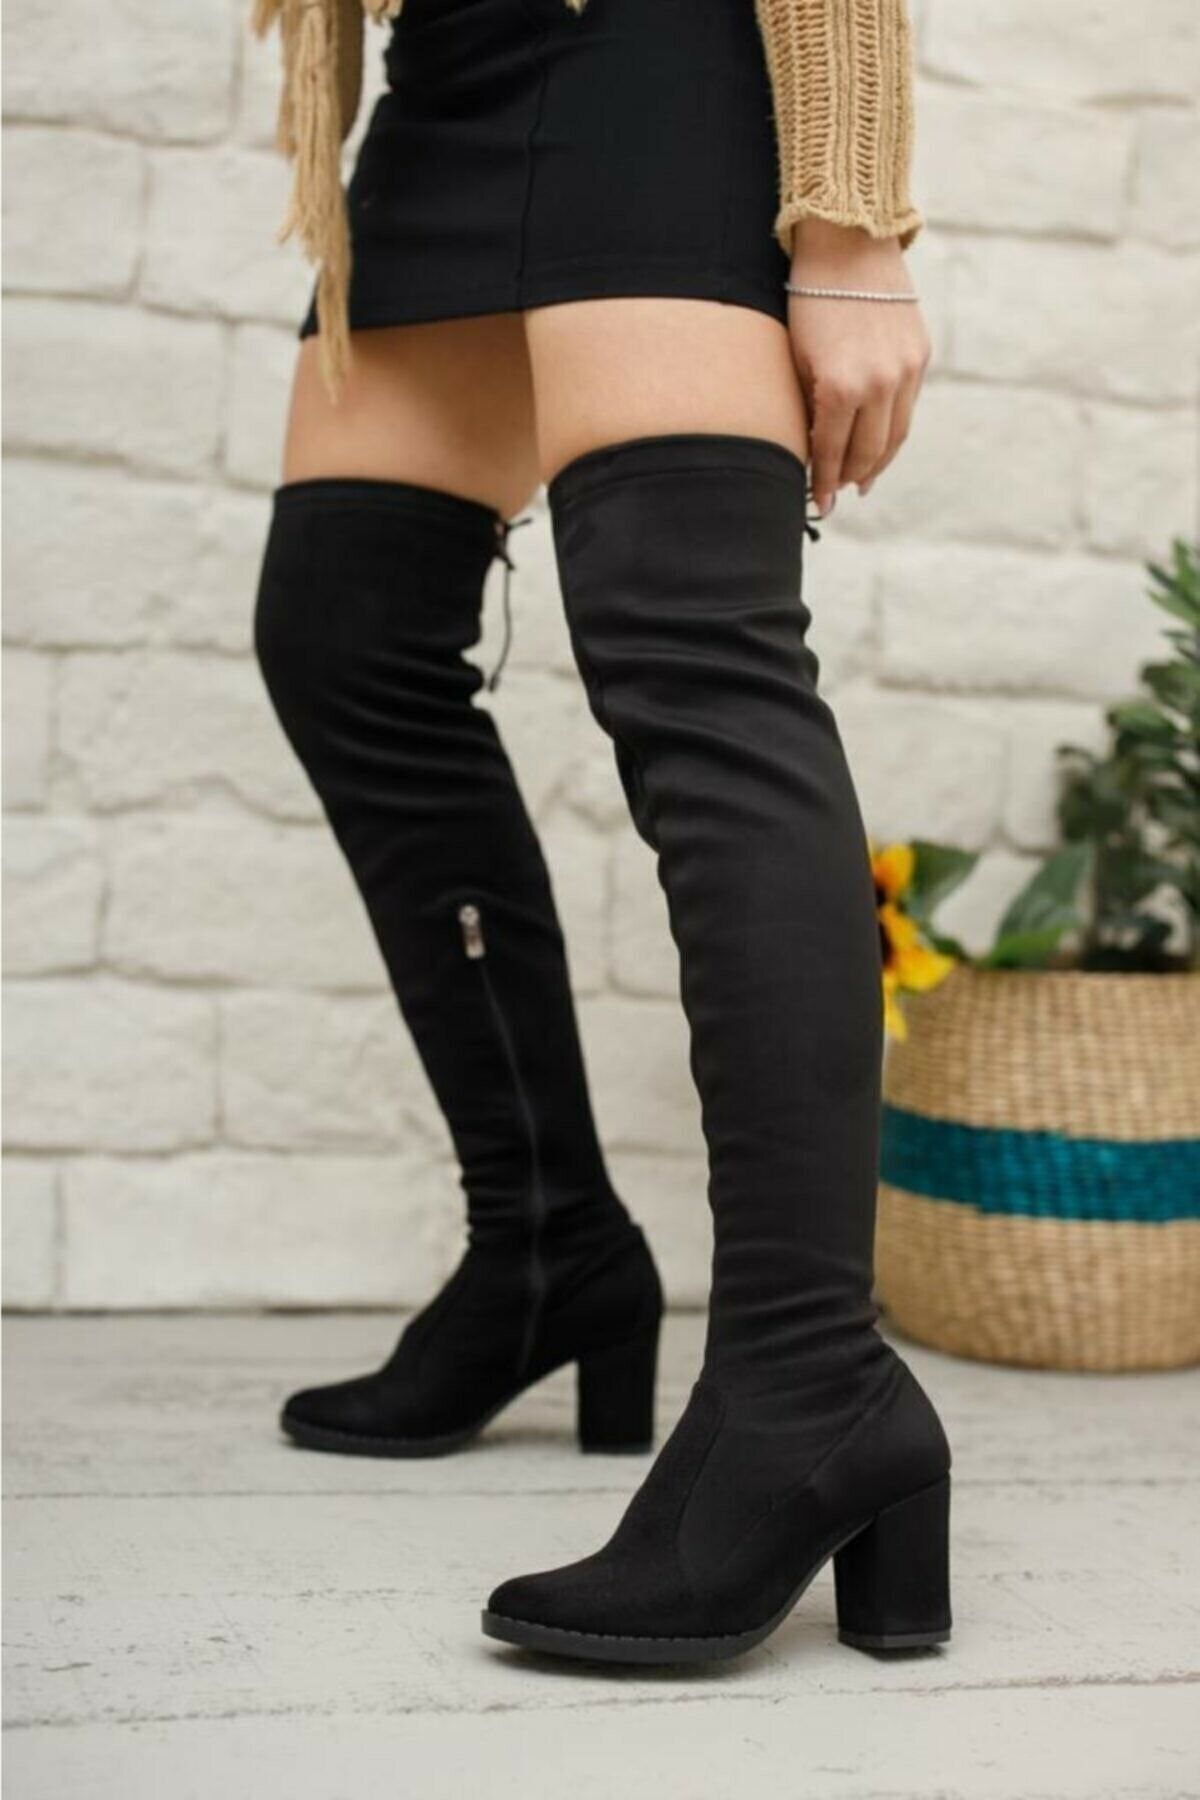 İmerShoes Kadın Siyah Streç Çorap Süet Kalın Topuklu Diz Üstü Çizme